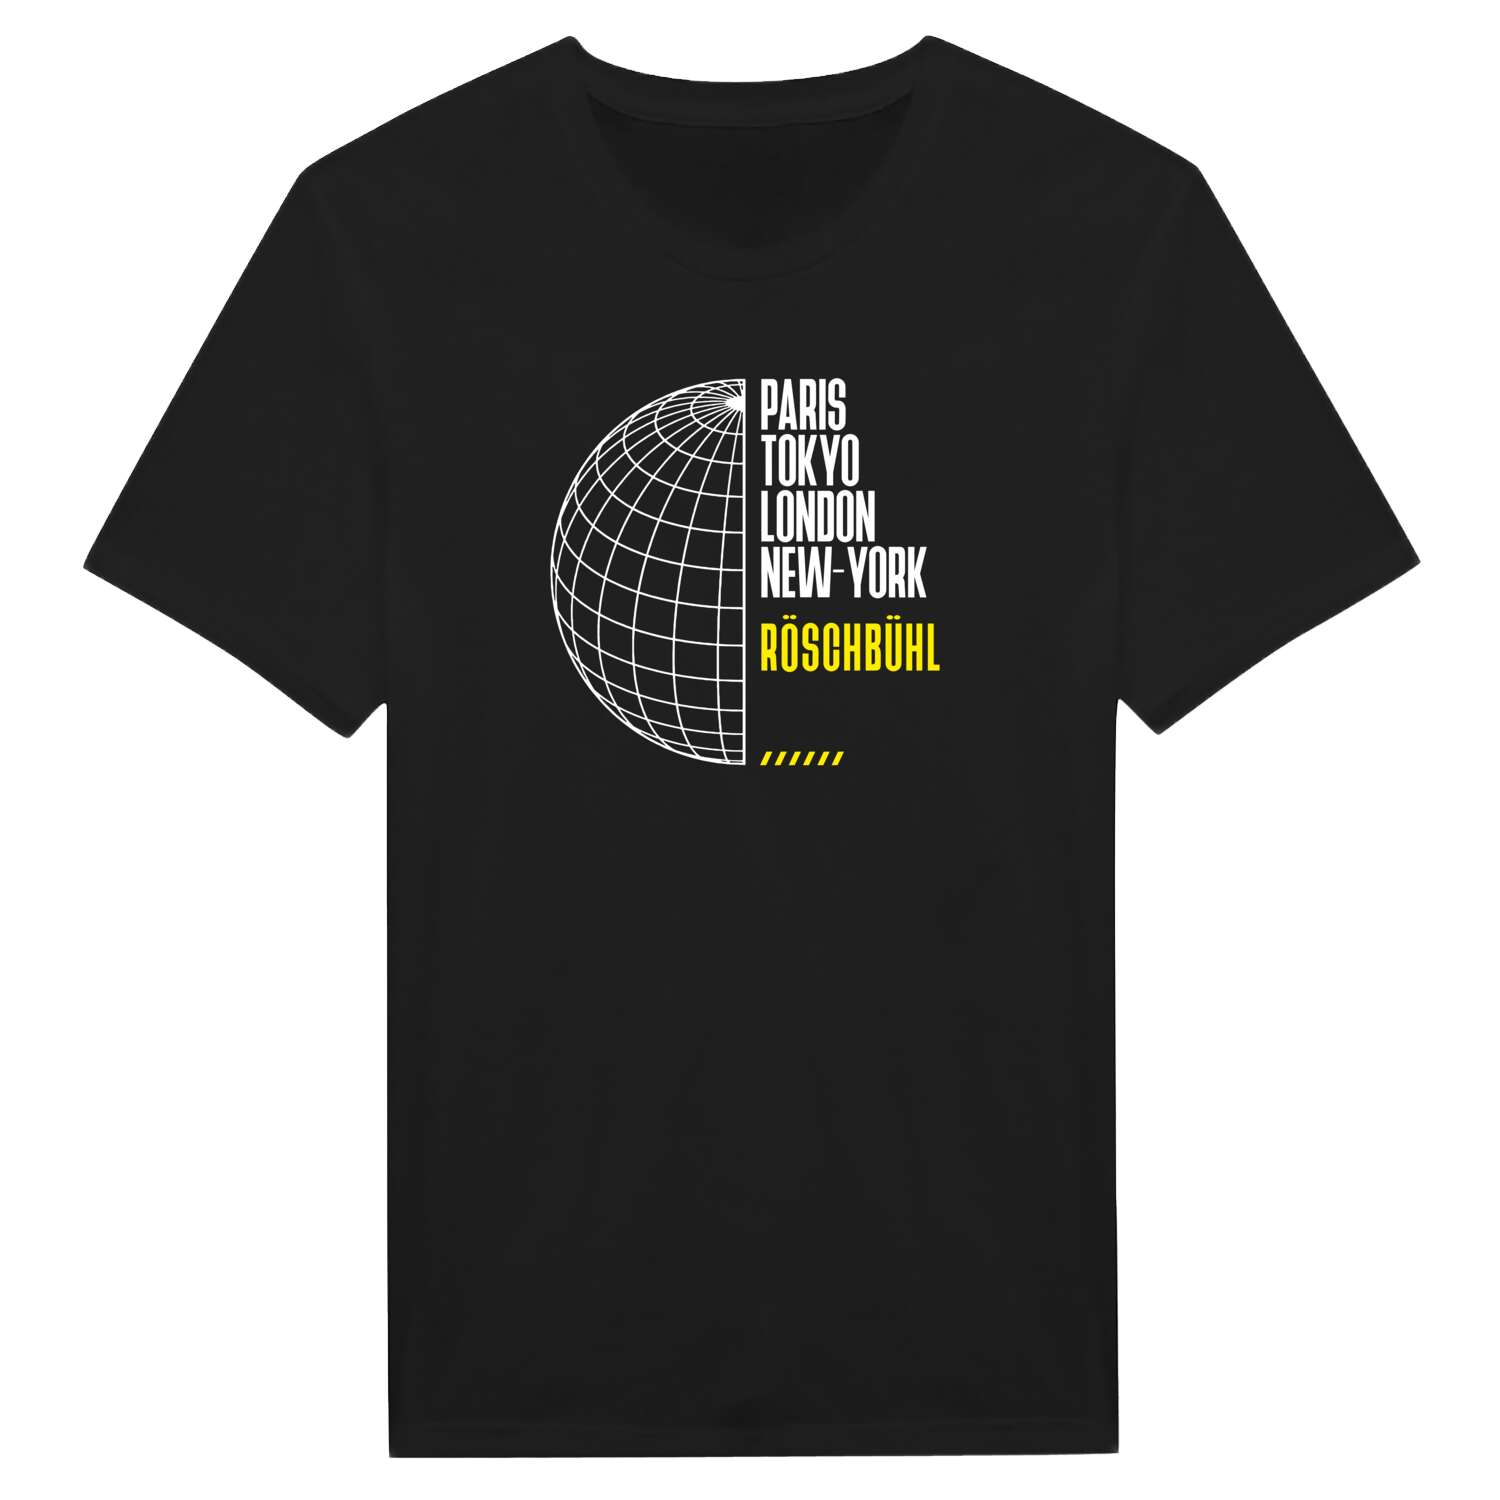 Röschbühl T-Shirt »Paris Tokyo London«